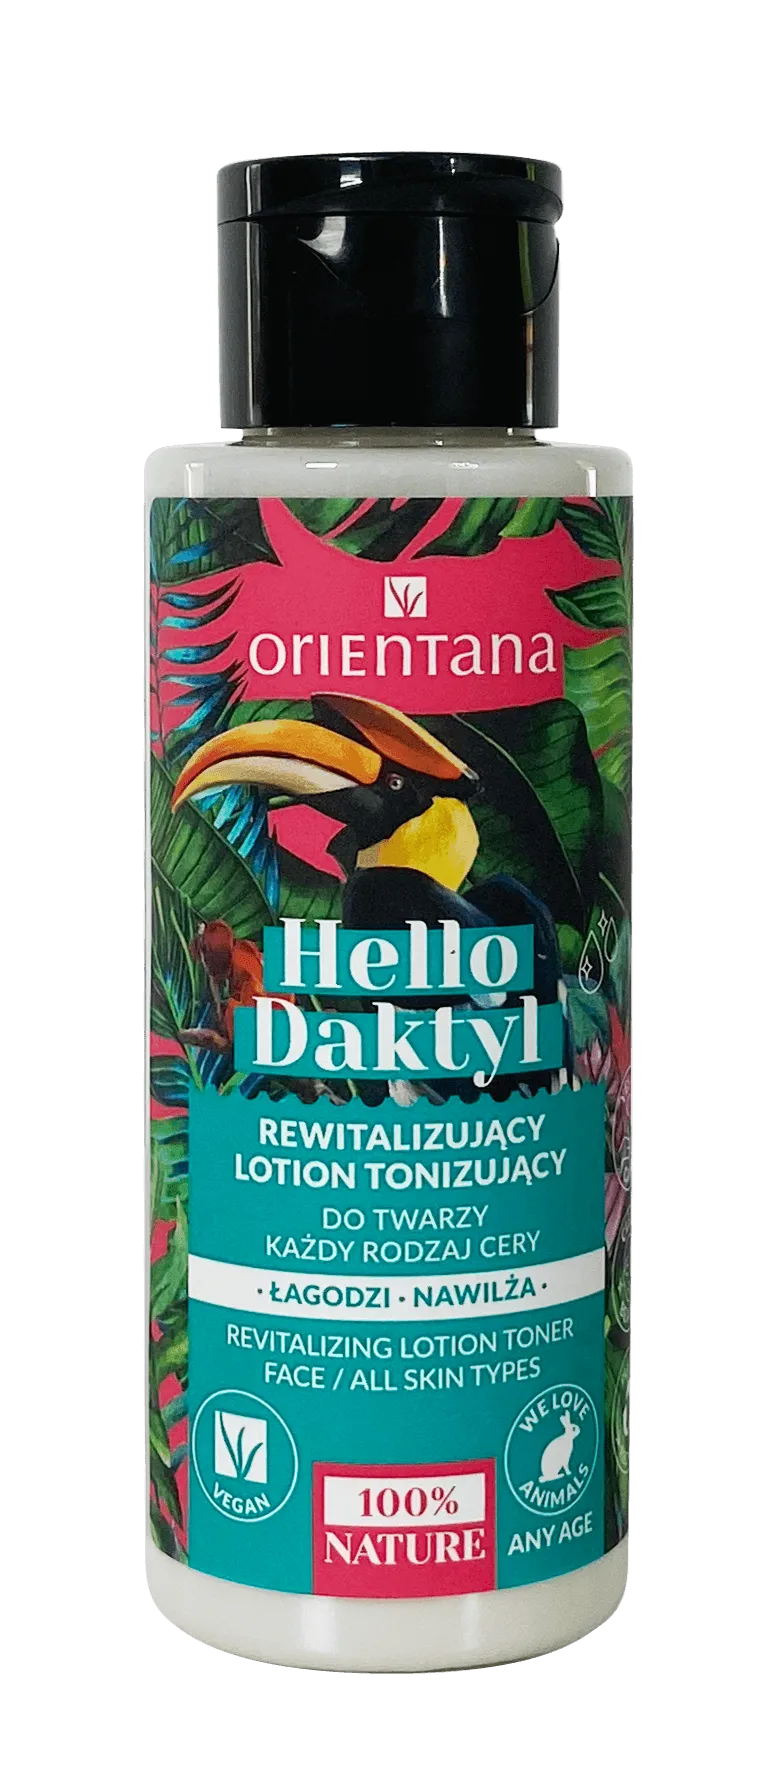 Orientana Hello Daktyl Rewitalizujący lotion tonizujący, 100 ml